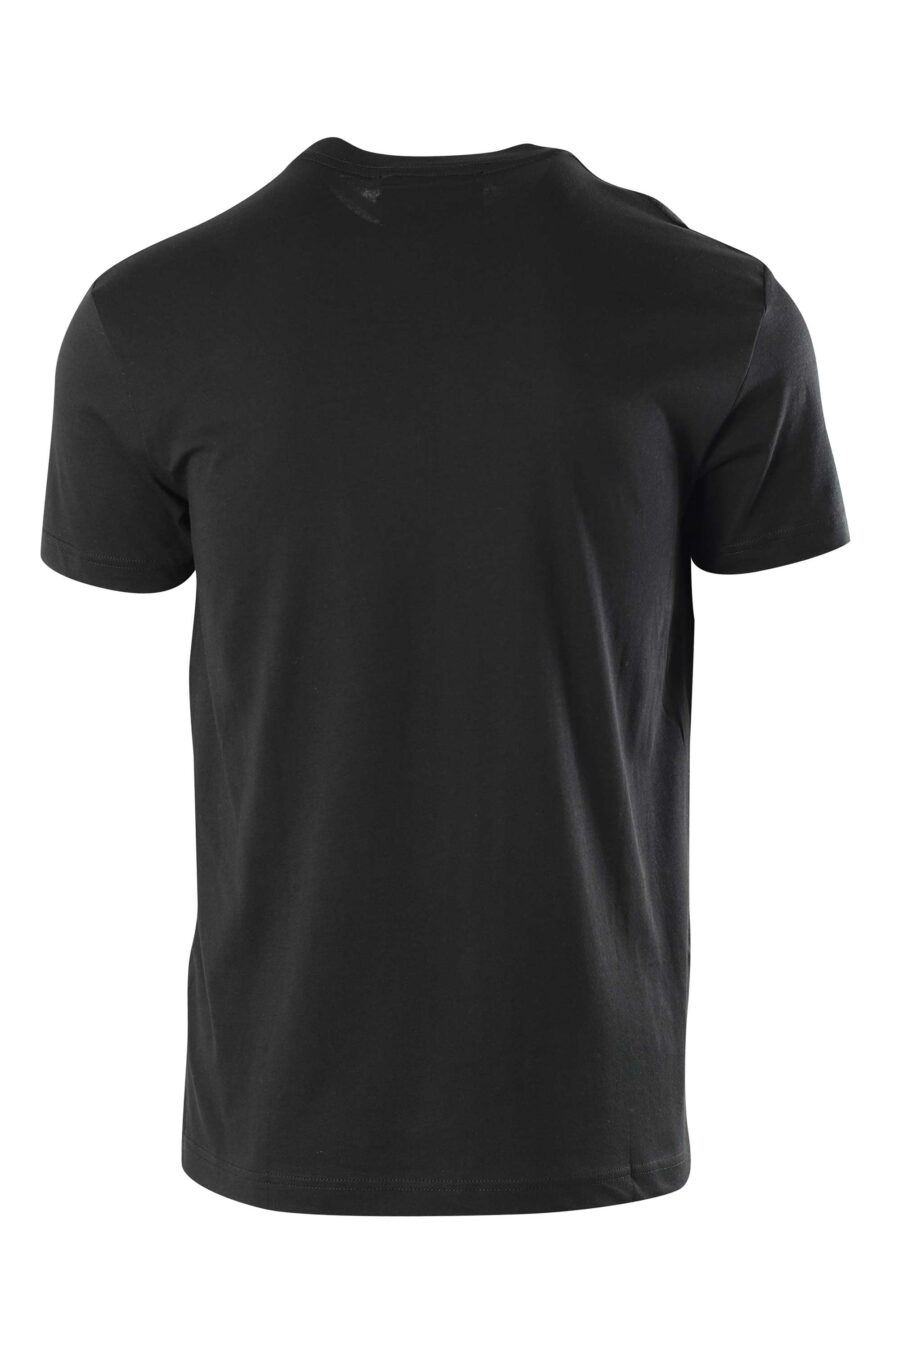 Camiseta negra con logo en cuello - 8052019325577 2